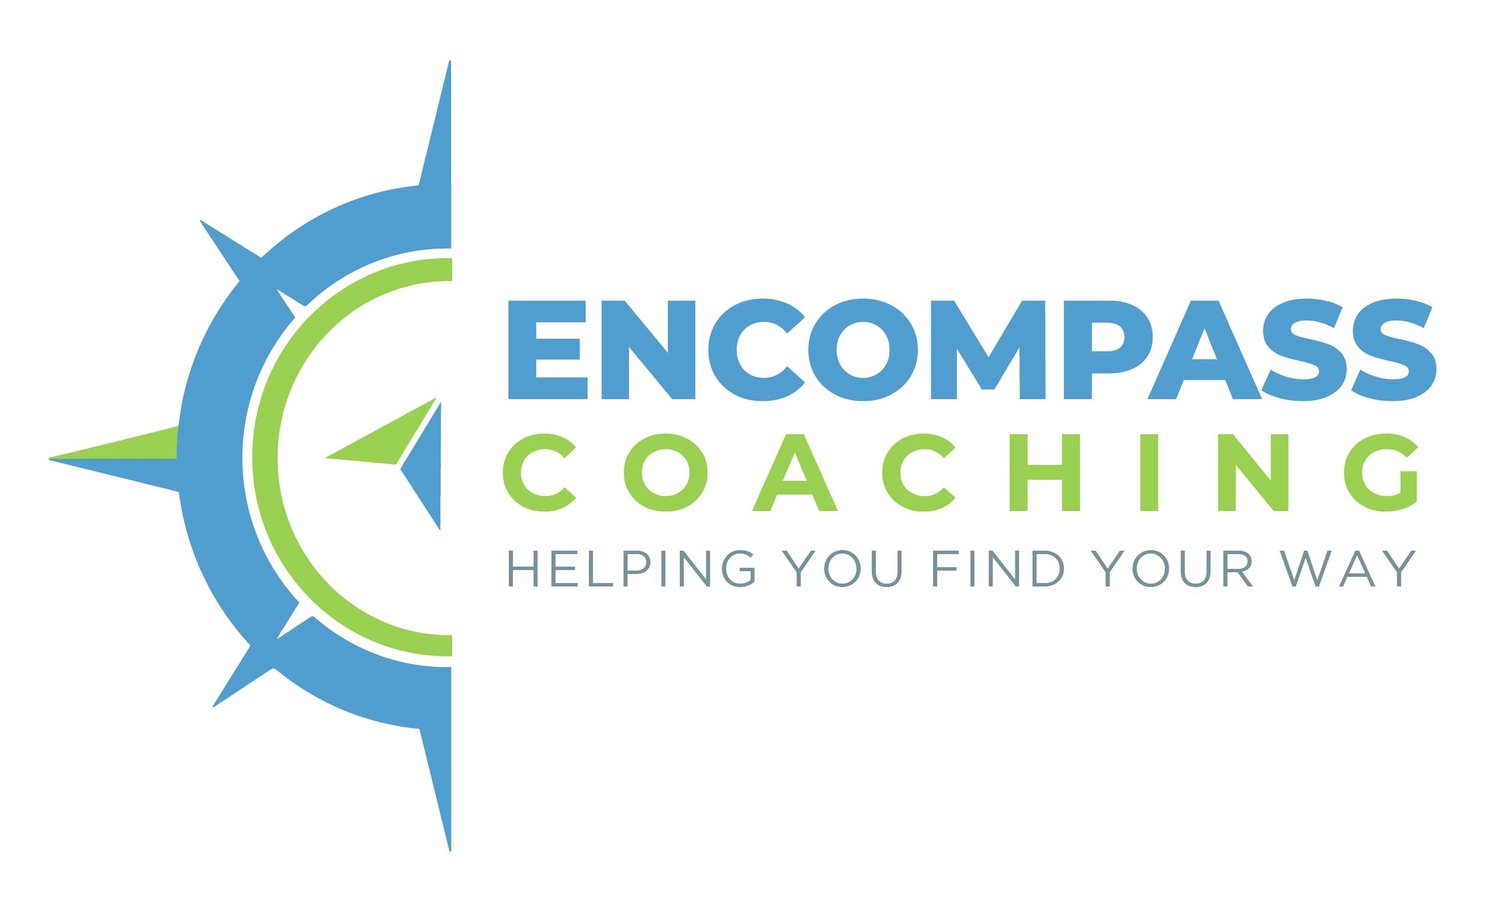 Encompass Coaching